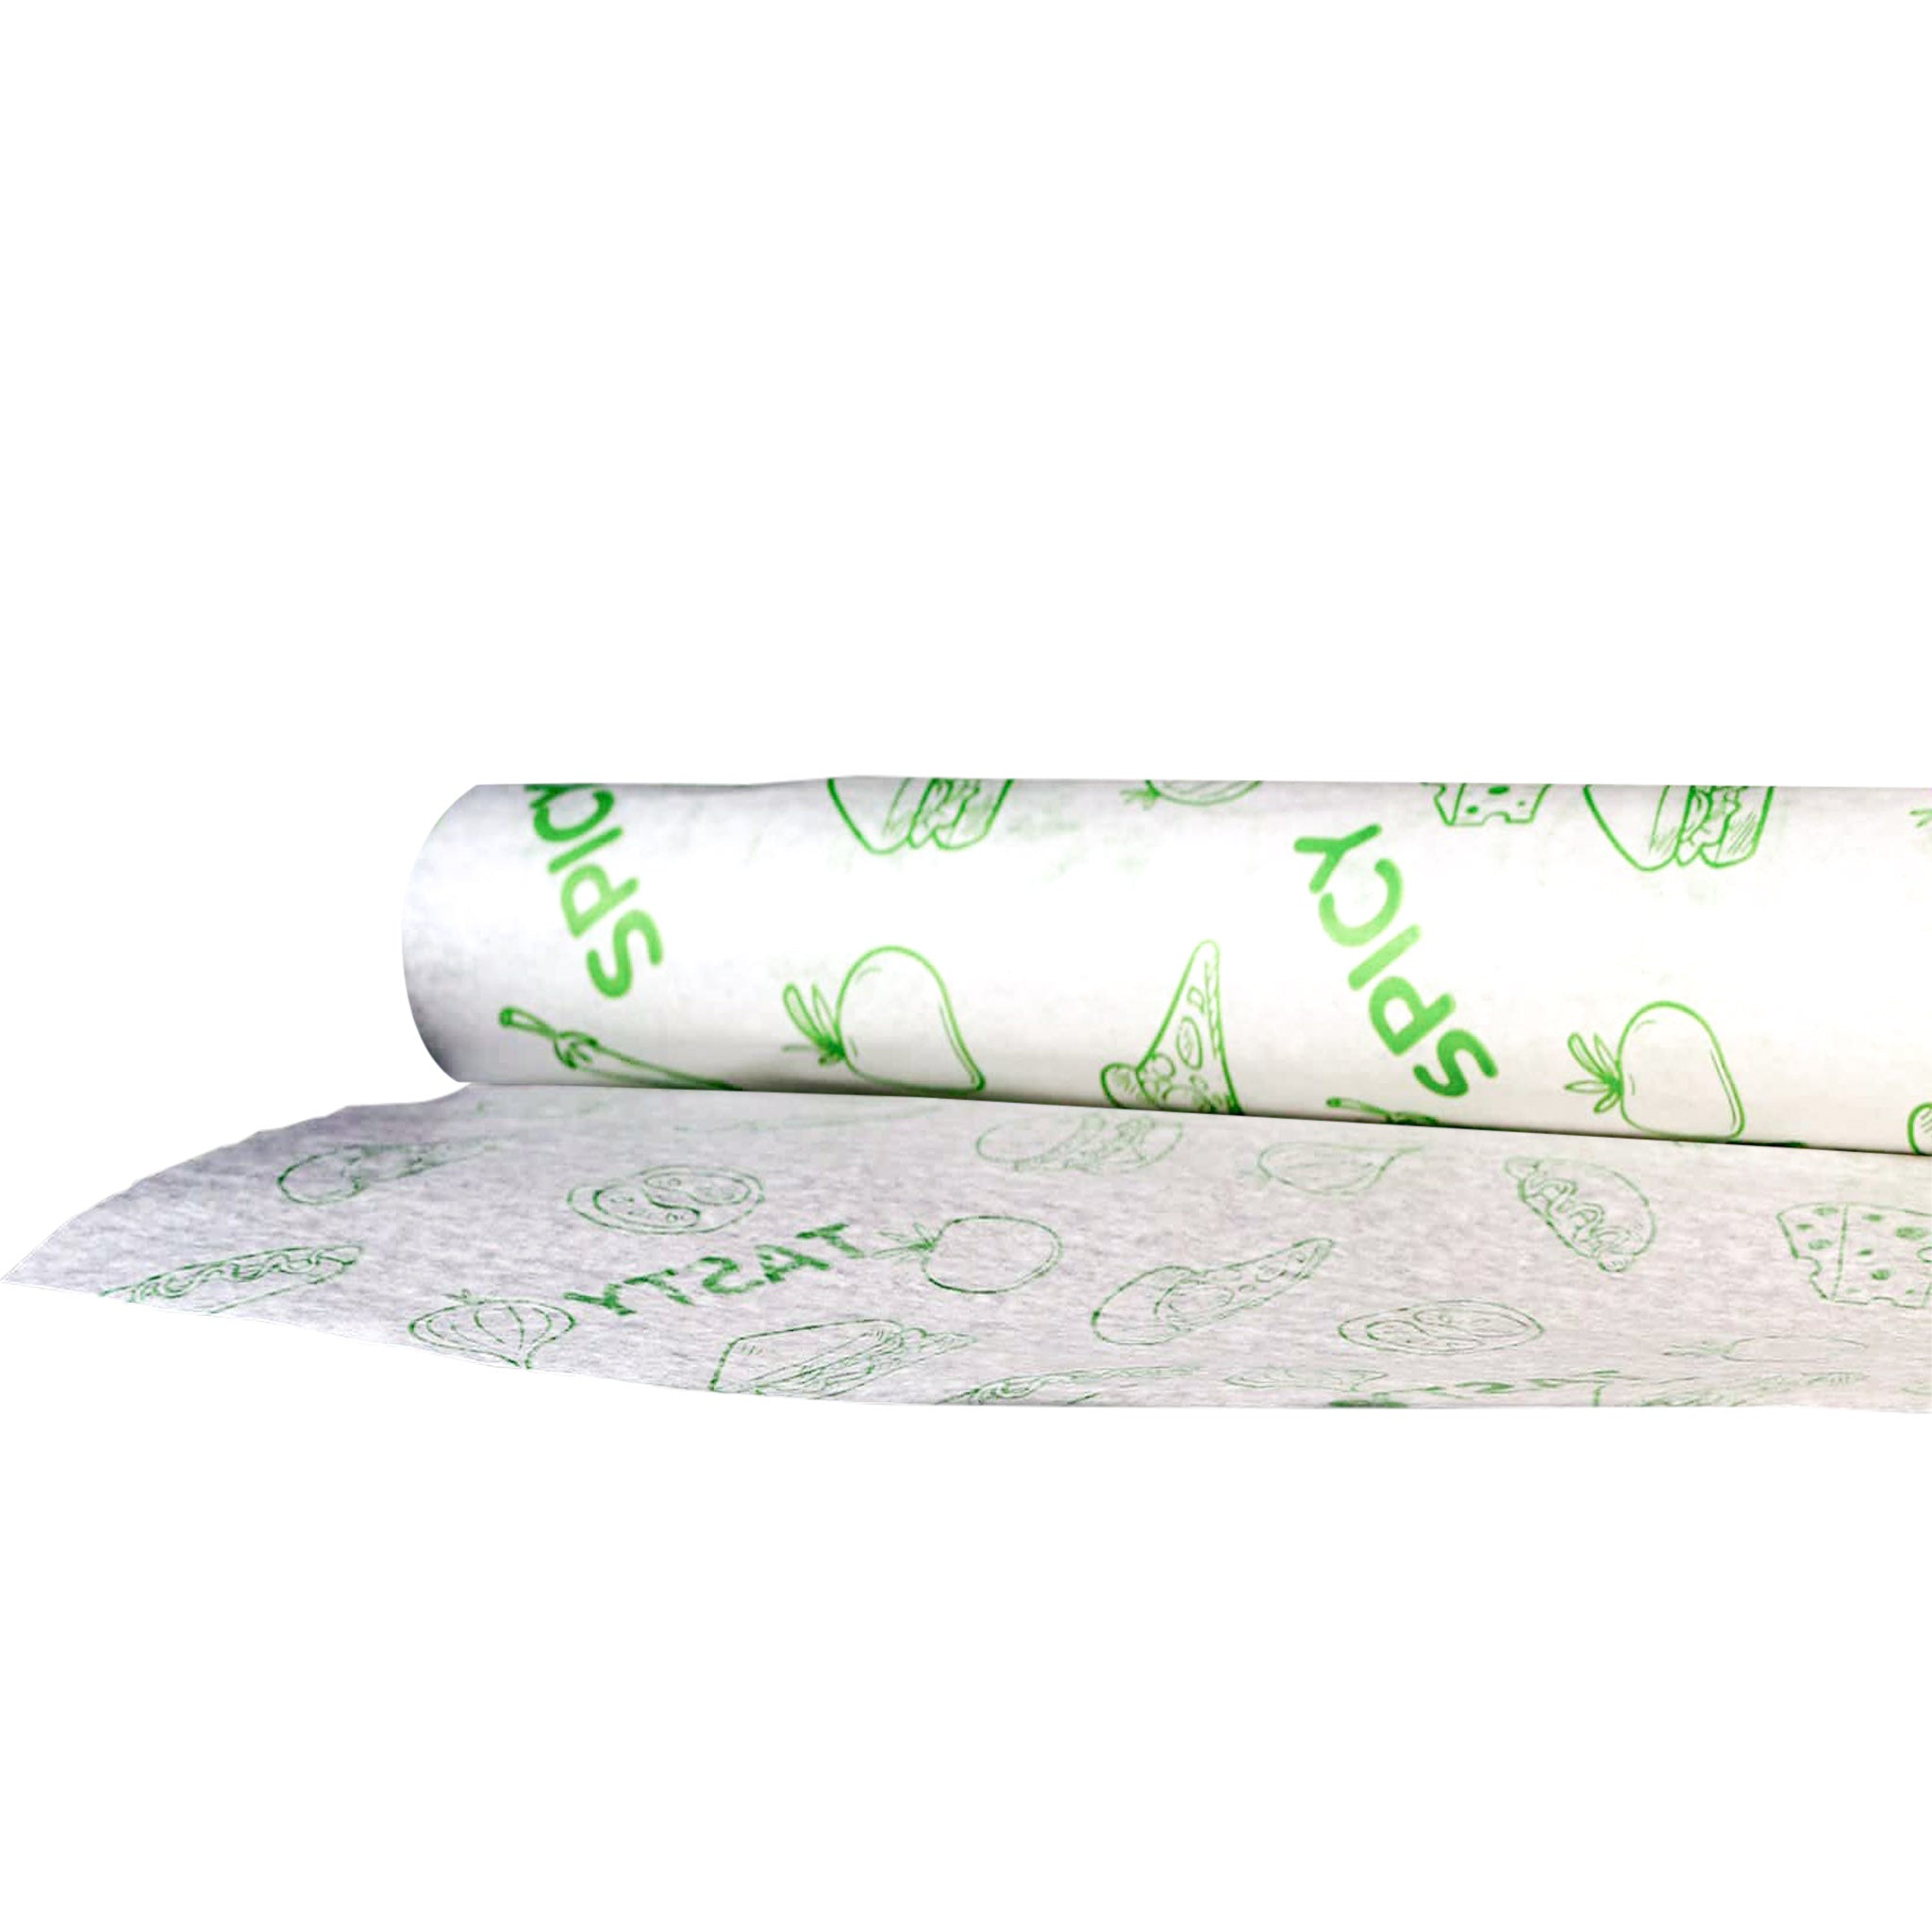 30 X 40 CM 500 Pieces Printed Sandwich Paper Wrap